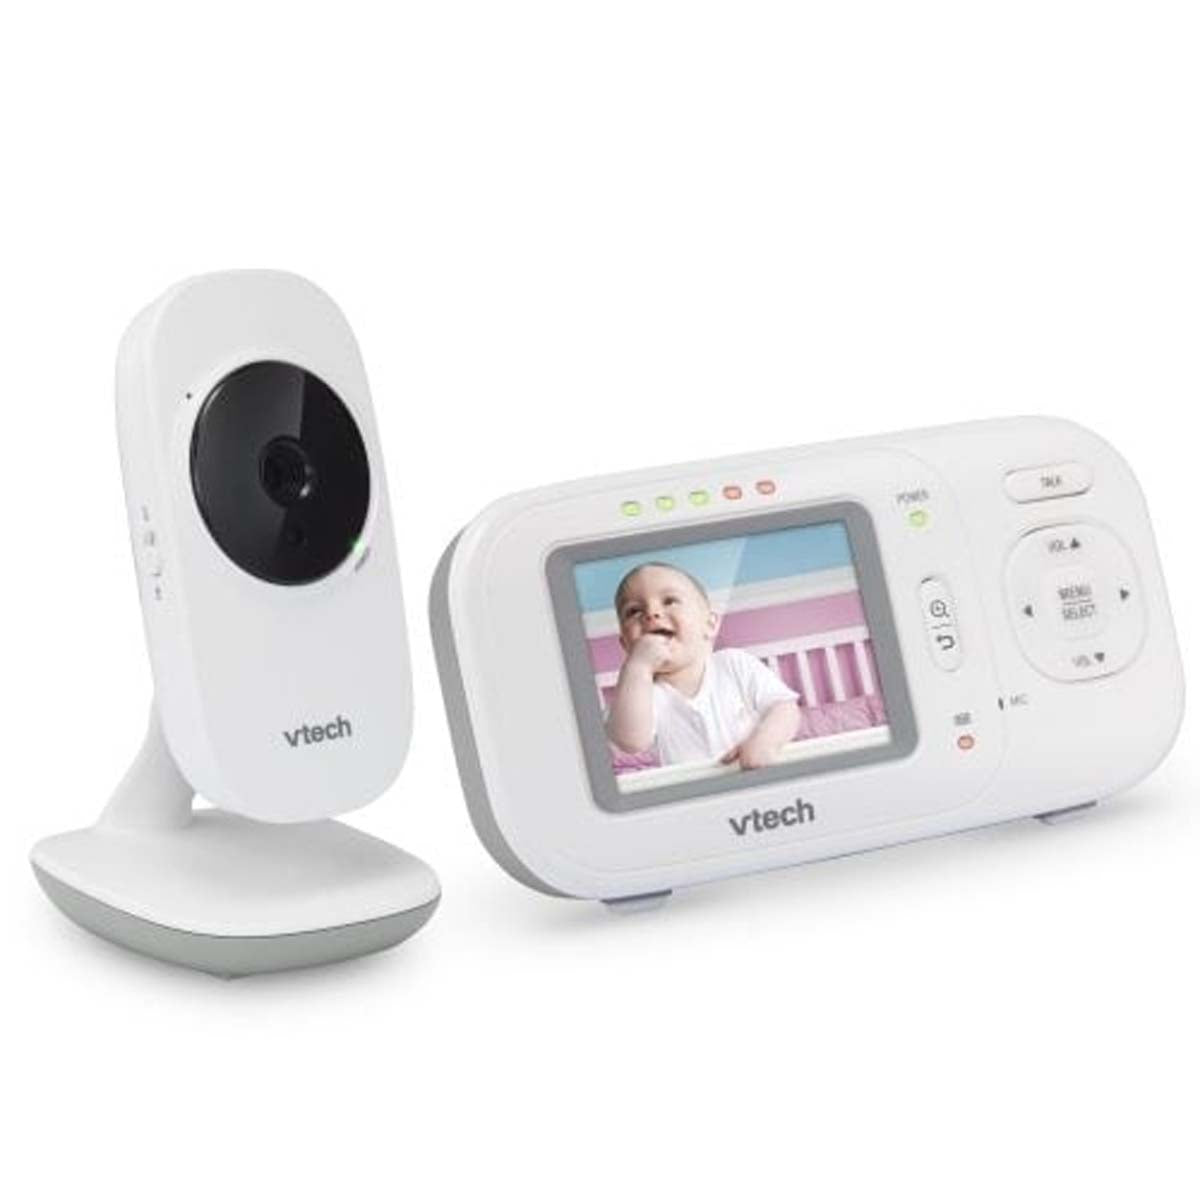 De Vtech babyfoon video VM 2251 is een fijne video babyfoon met veel fijne functies en eenvoudige bediening. De babyfoon heeft een kleurenscherm (2,4-inch) en een groot bereik binnen- en buitenshuis. VanZus.